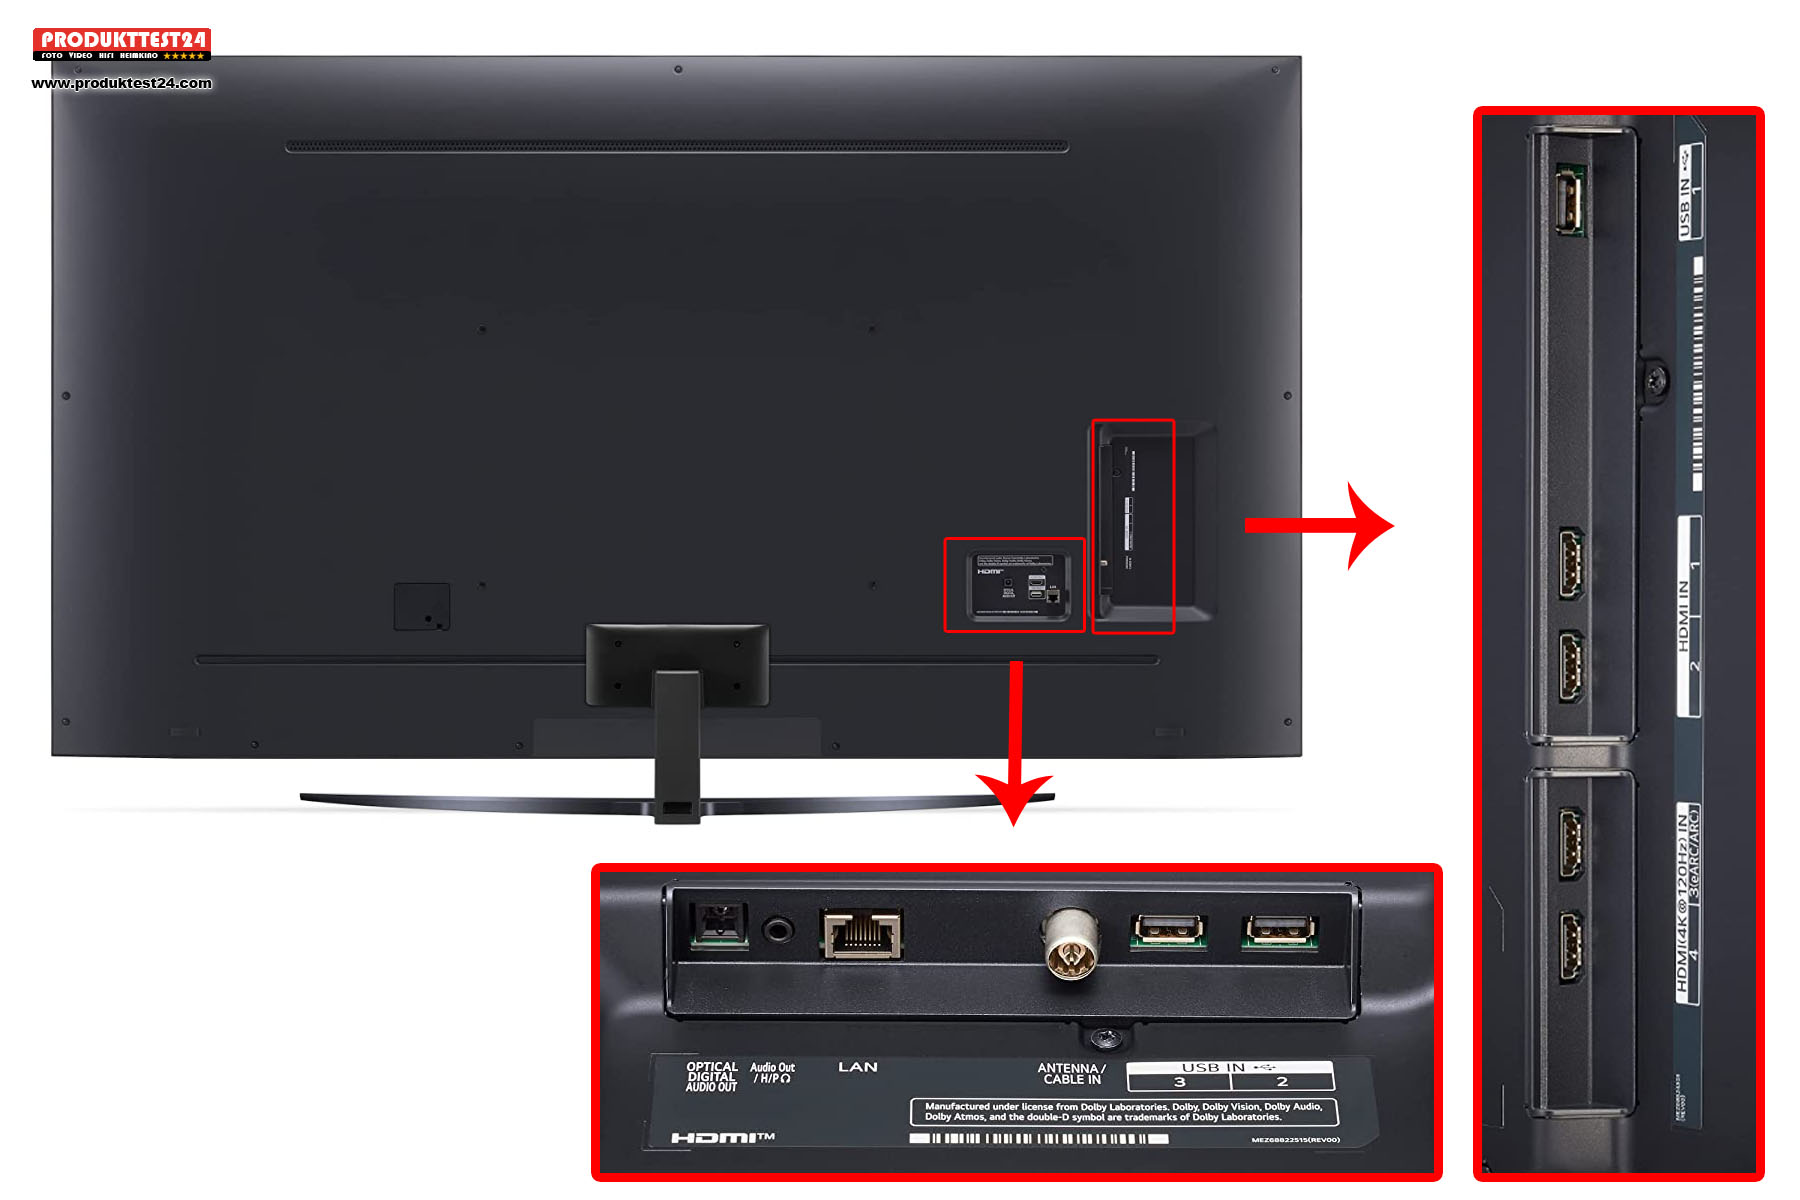 Anschlüsse sind genug vorhanden. 3 HDMI Ports reichen in den meisten Fällen aus.